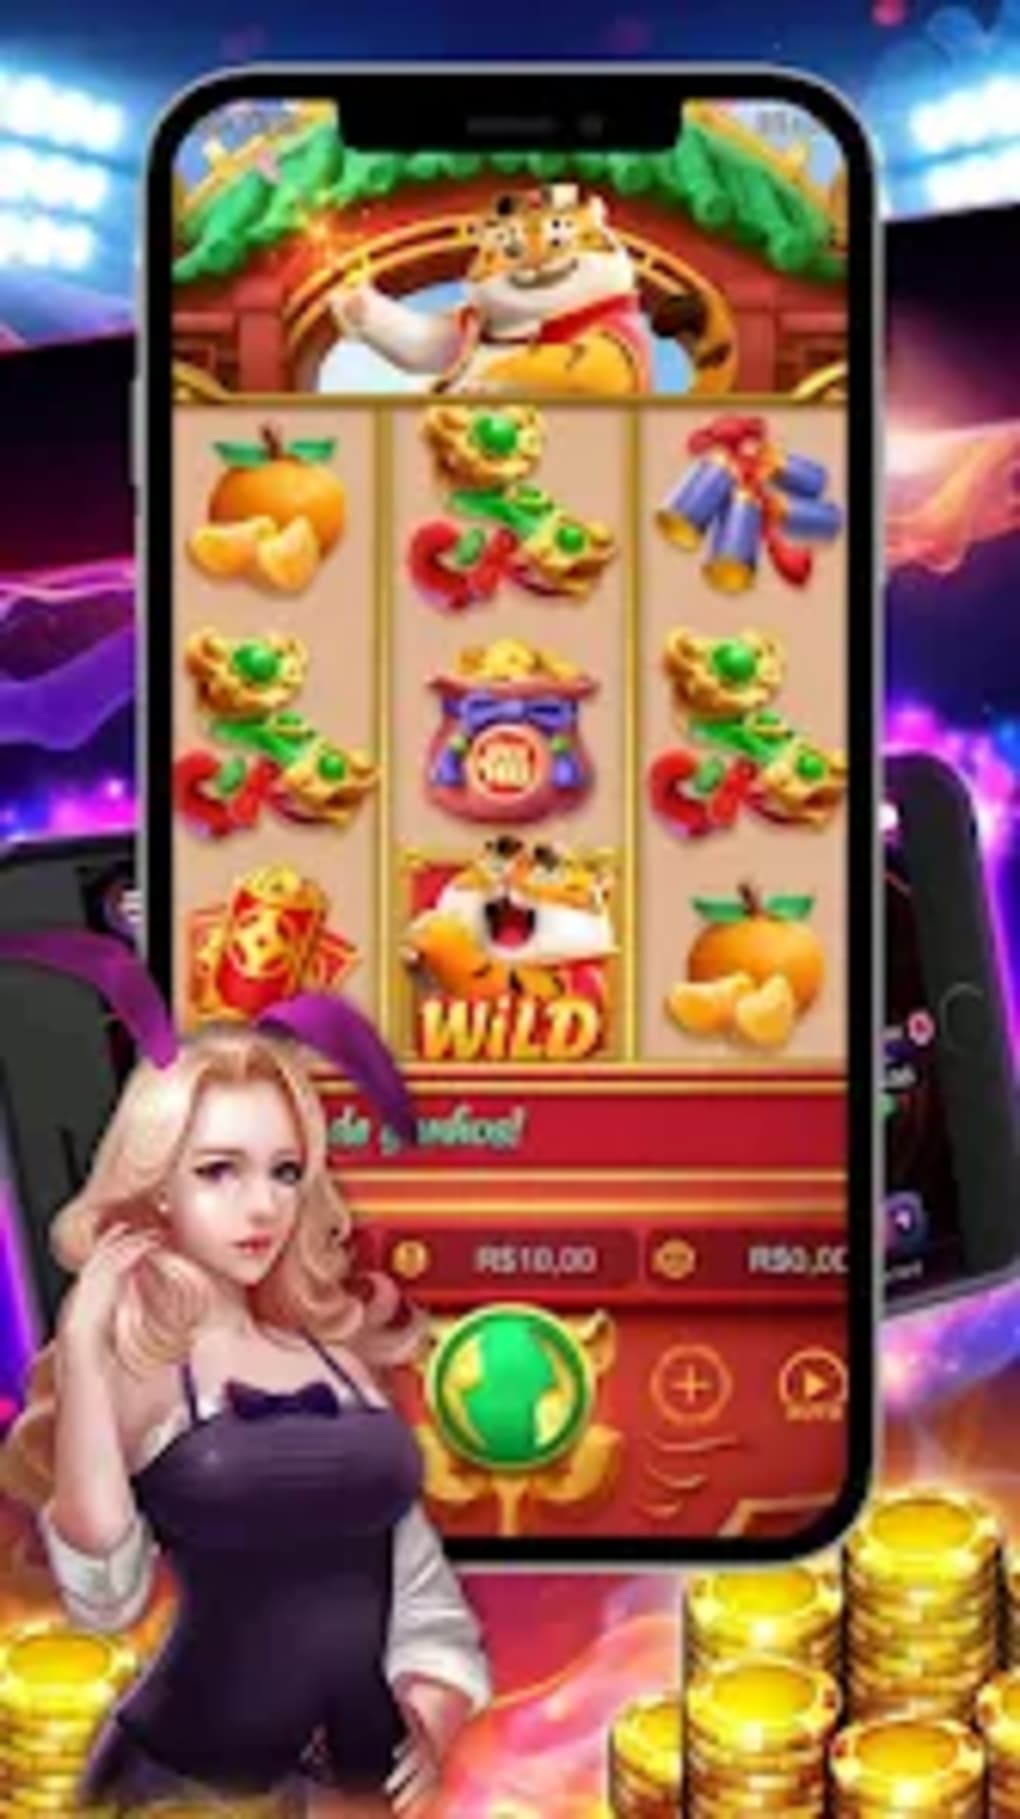 Fortune Tiger: Jogue o Jogo do Tigre por dinheiro real em Casino